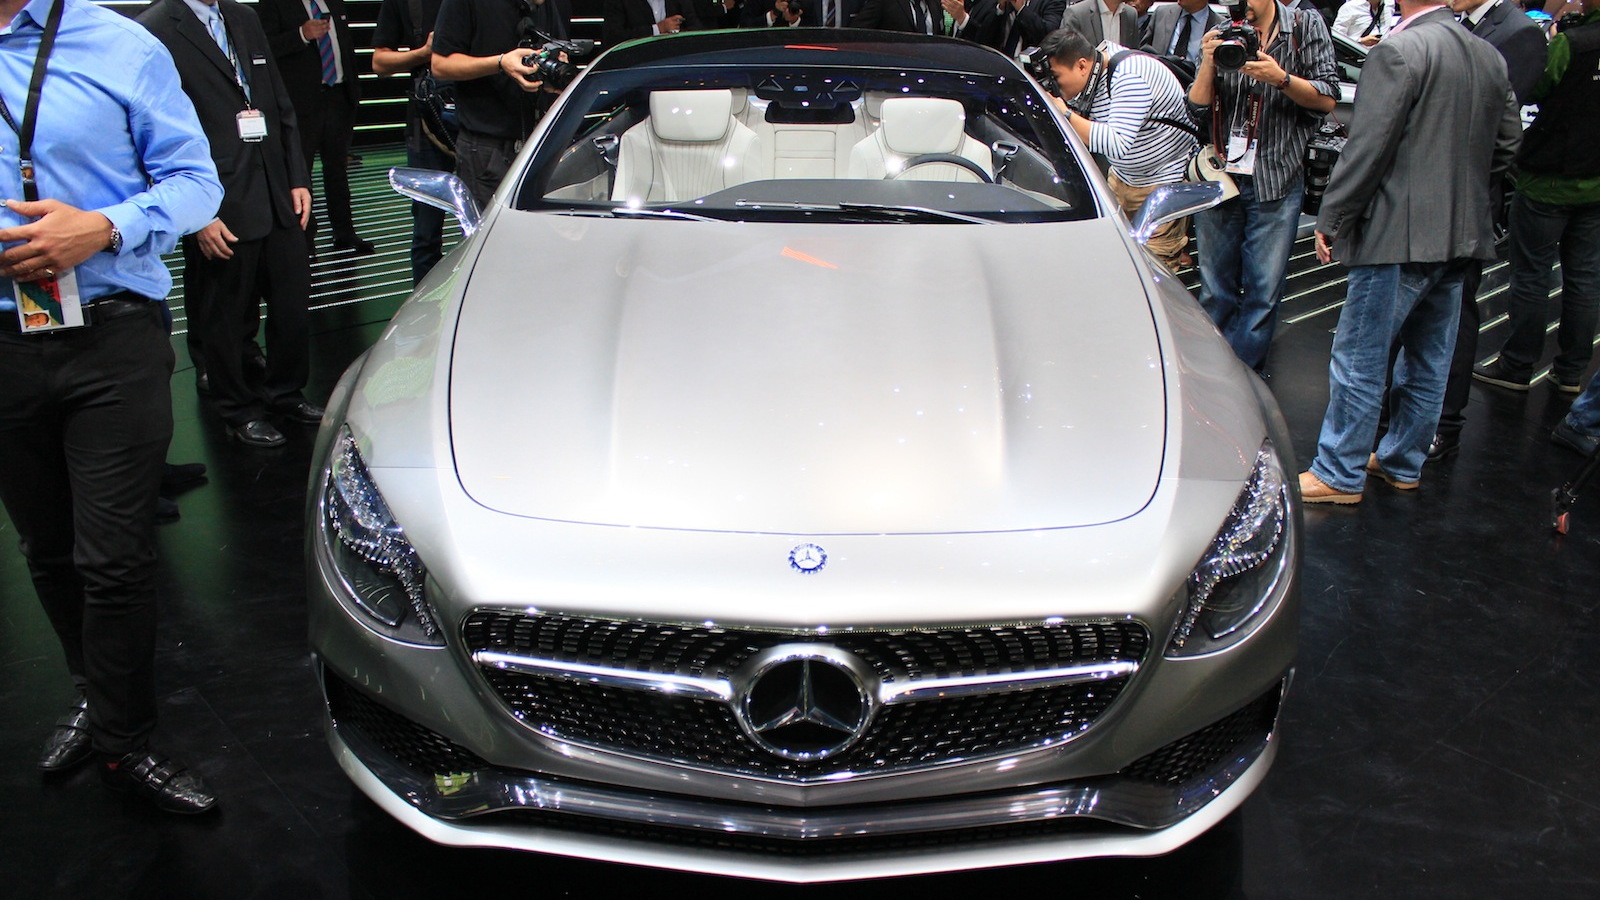 Mercedes-Benz Concept S Class Coupe, 2013 Frankfurt Auto Show